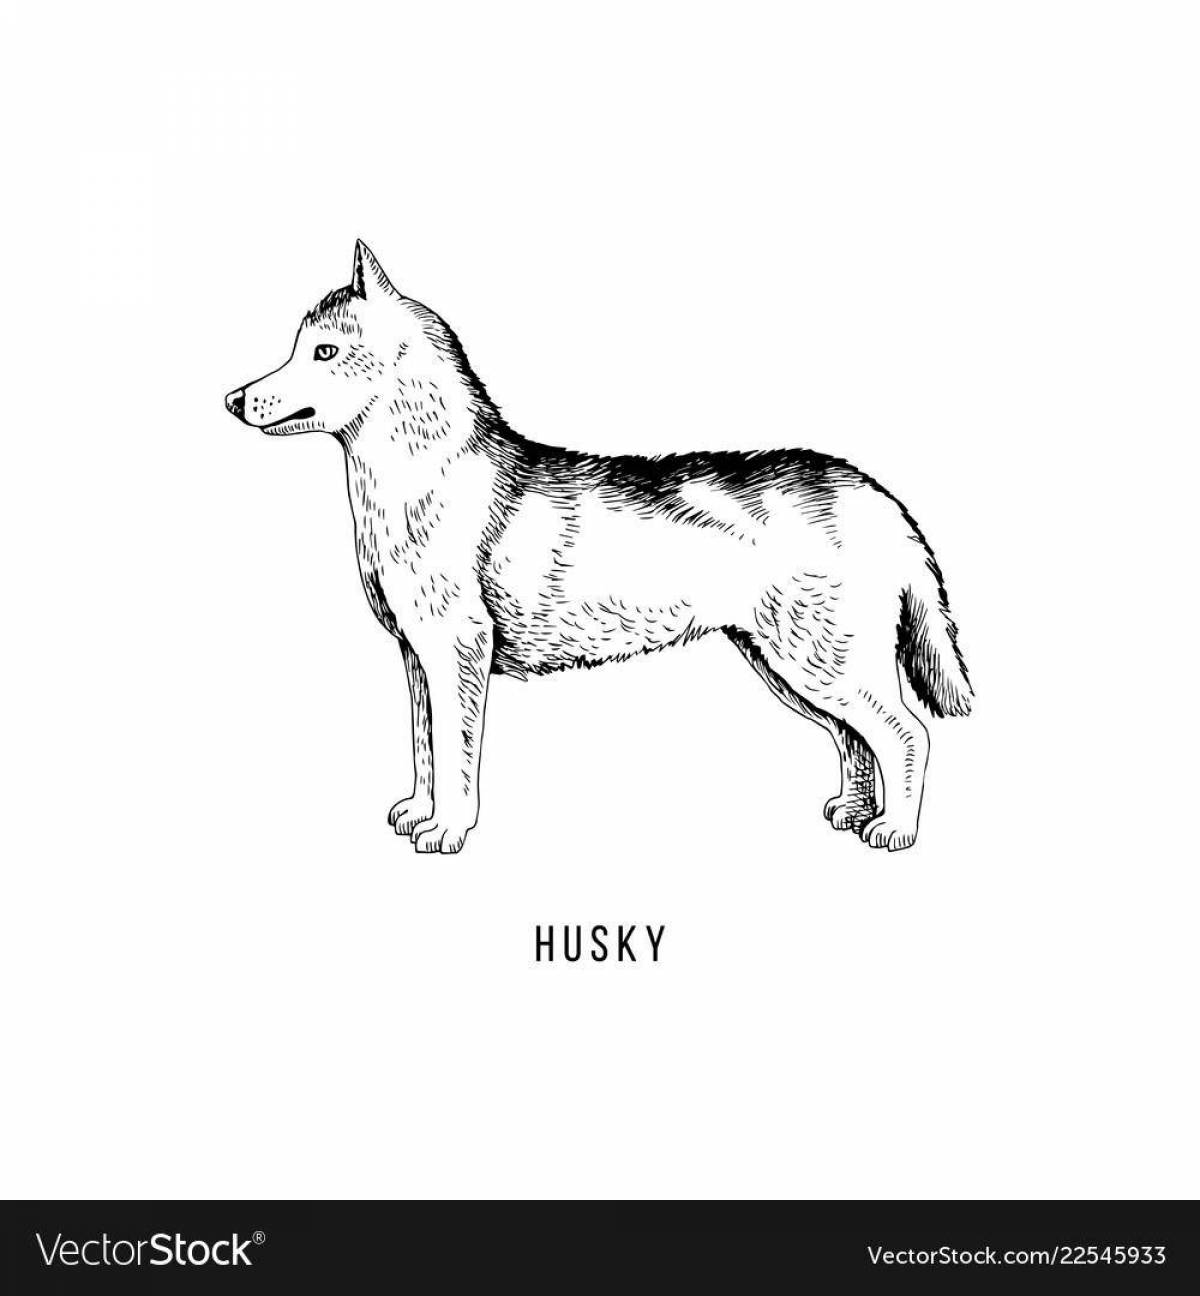 Husky agouti fun coloring book